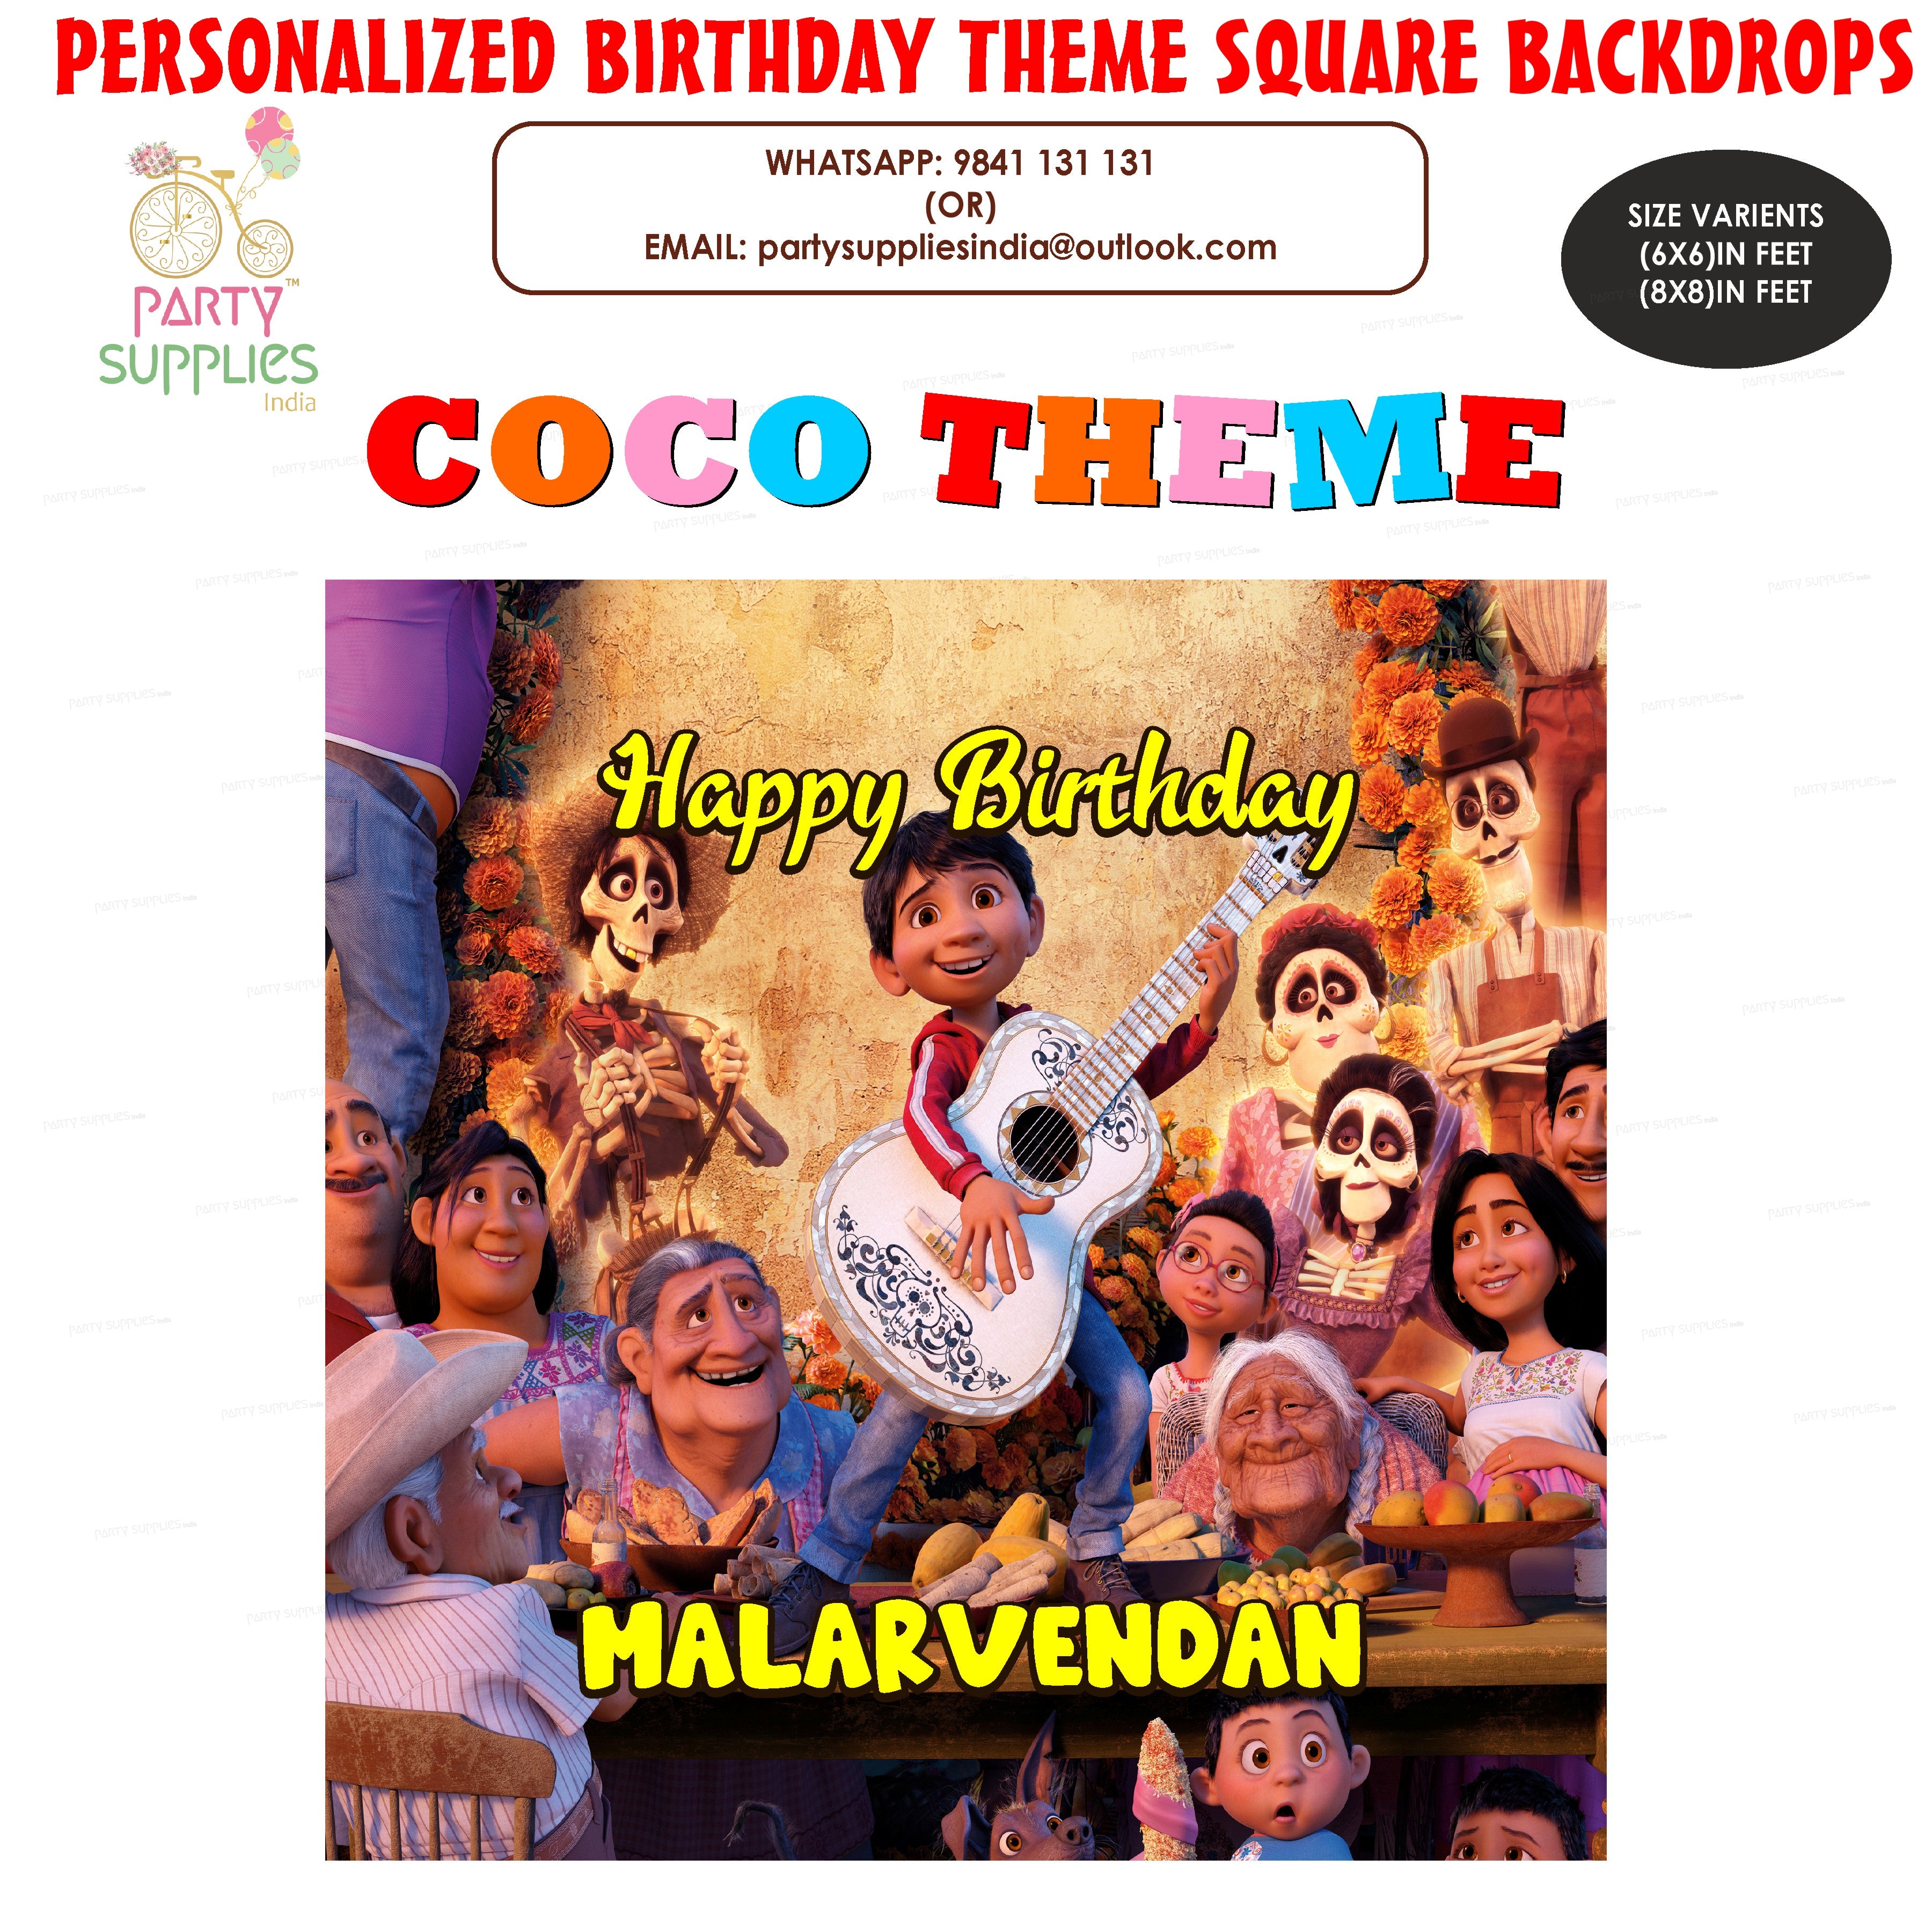 PSI Coco Theme Premium Square Backdrop